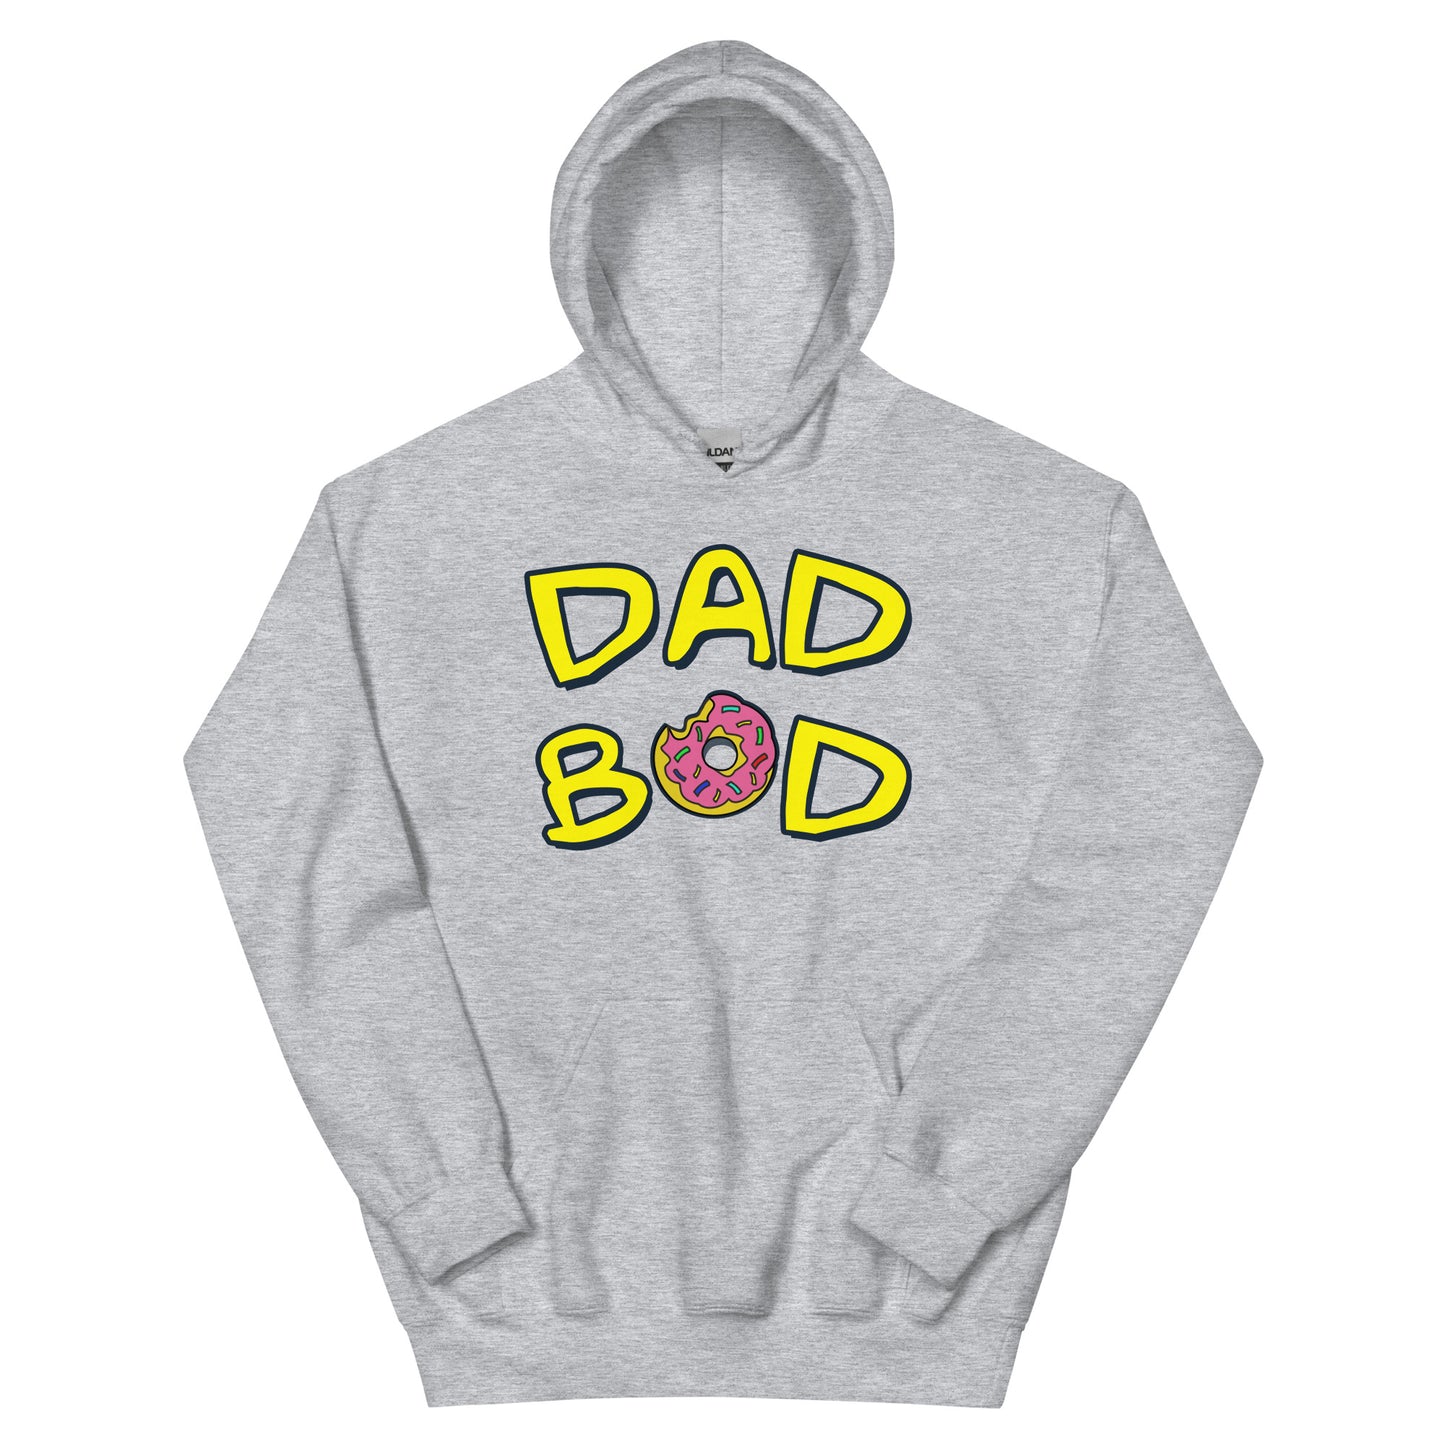 "Dad Bod" - Hoodie